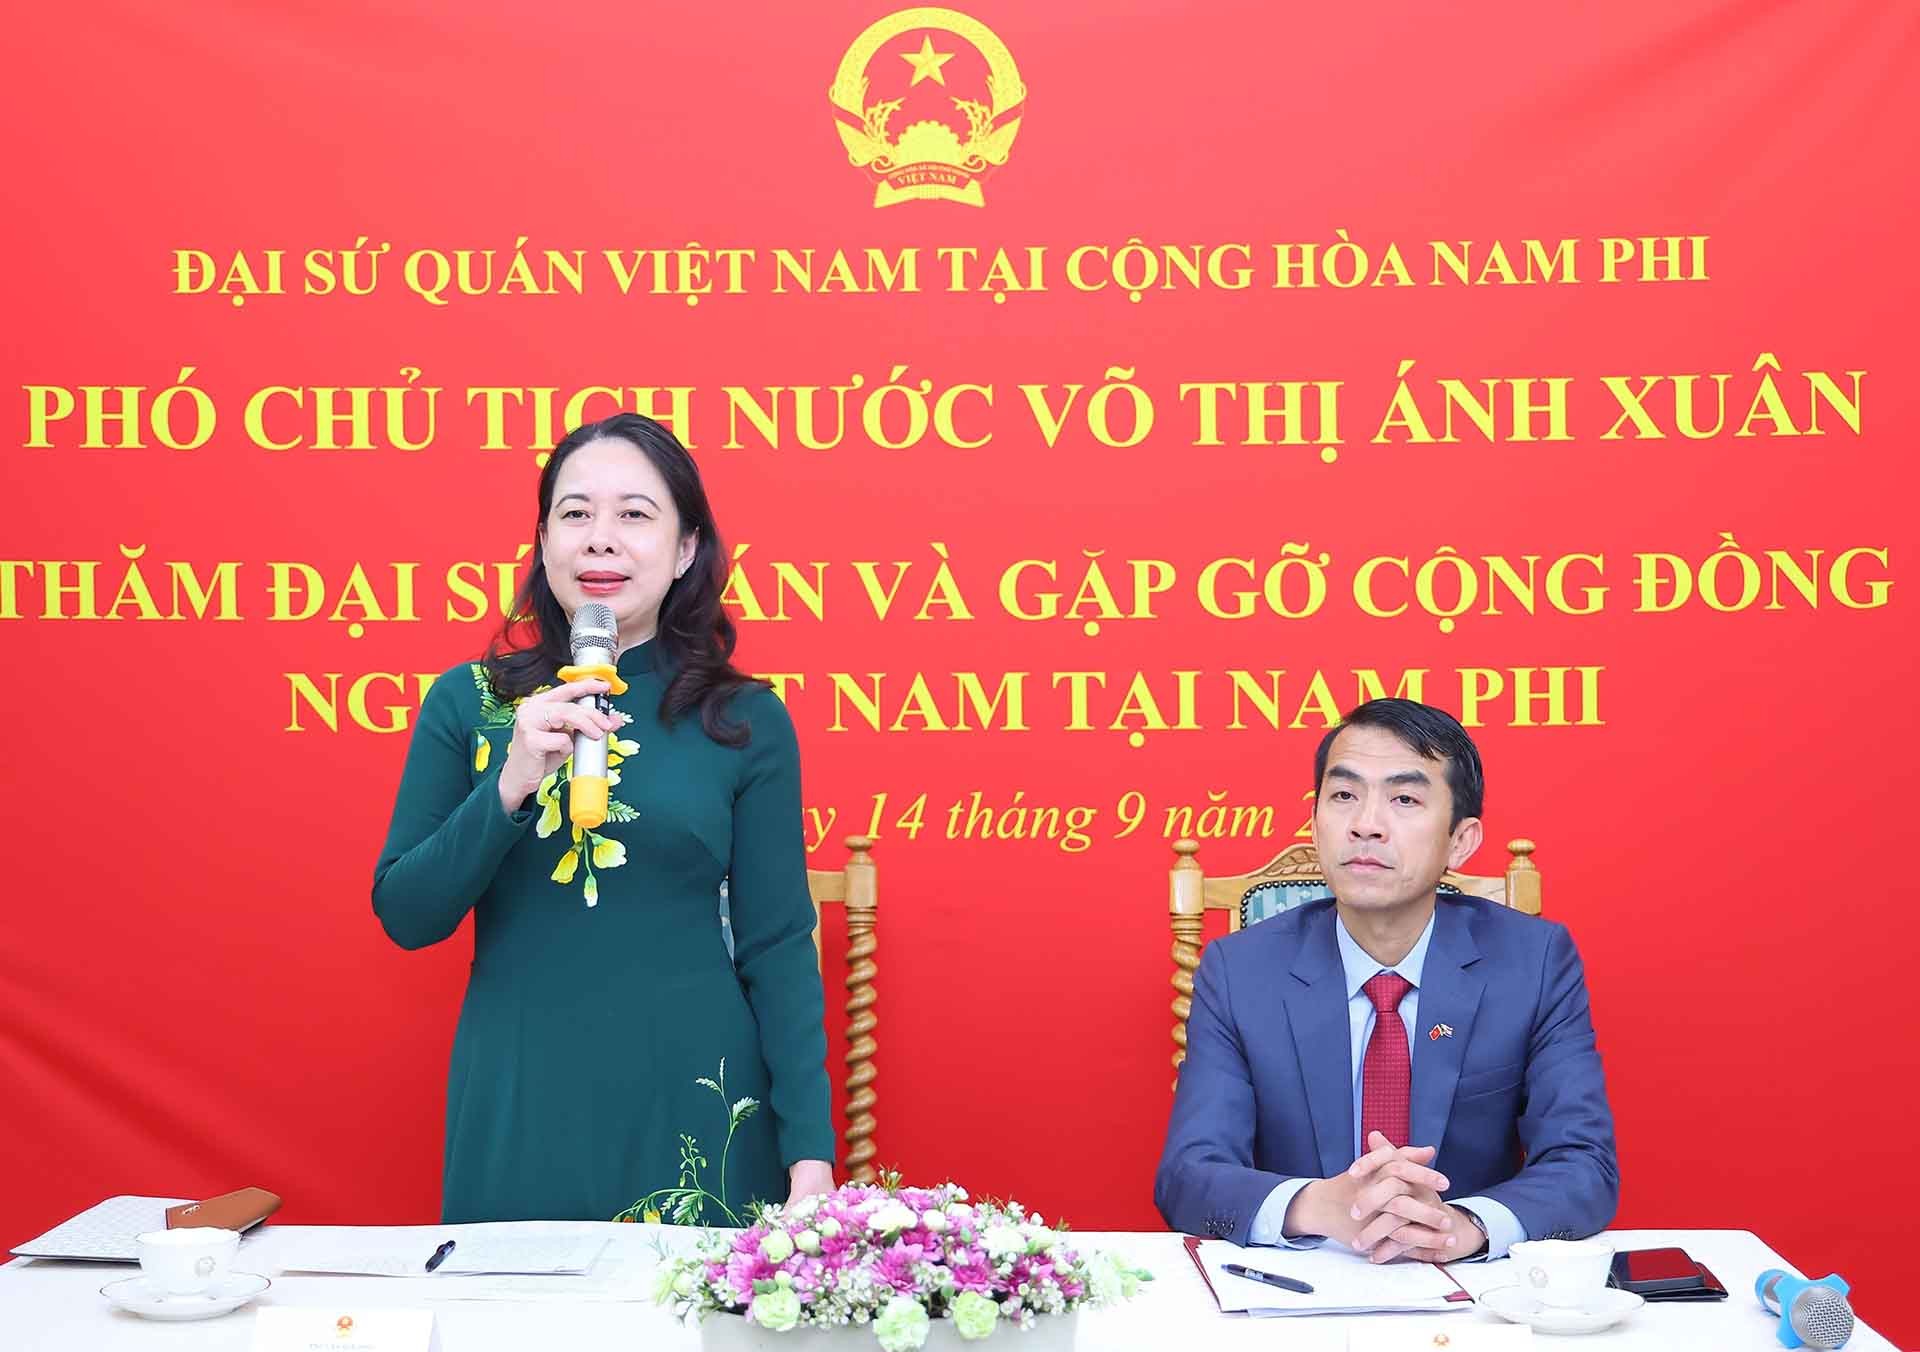 Phó Chủ tịch nước Võ Thị Ánh Xuân nói chuyện với cán bộ, nhân viên Đại sứ quán và đại diện cộng đồng người Việt Nam sinh sống và làm việc tại Nam Phi. (Nguồn: TTXVN)